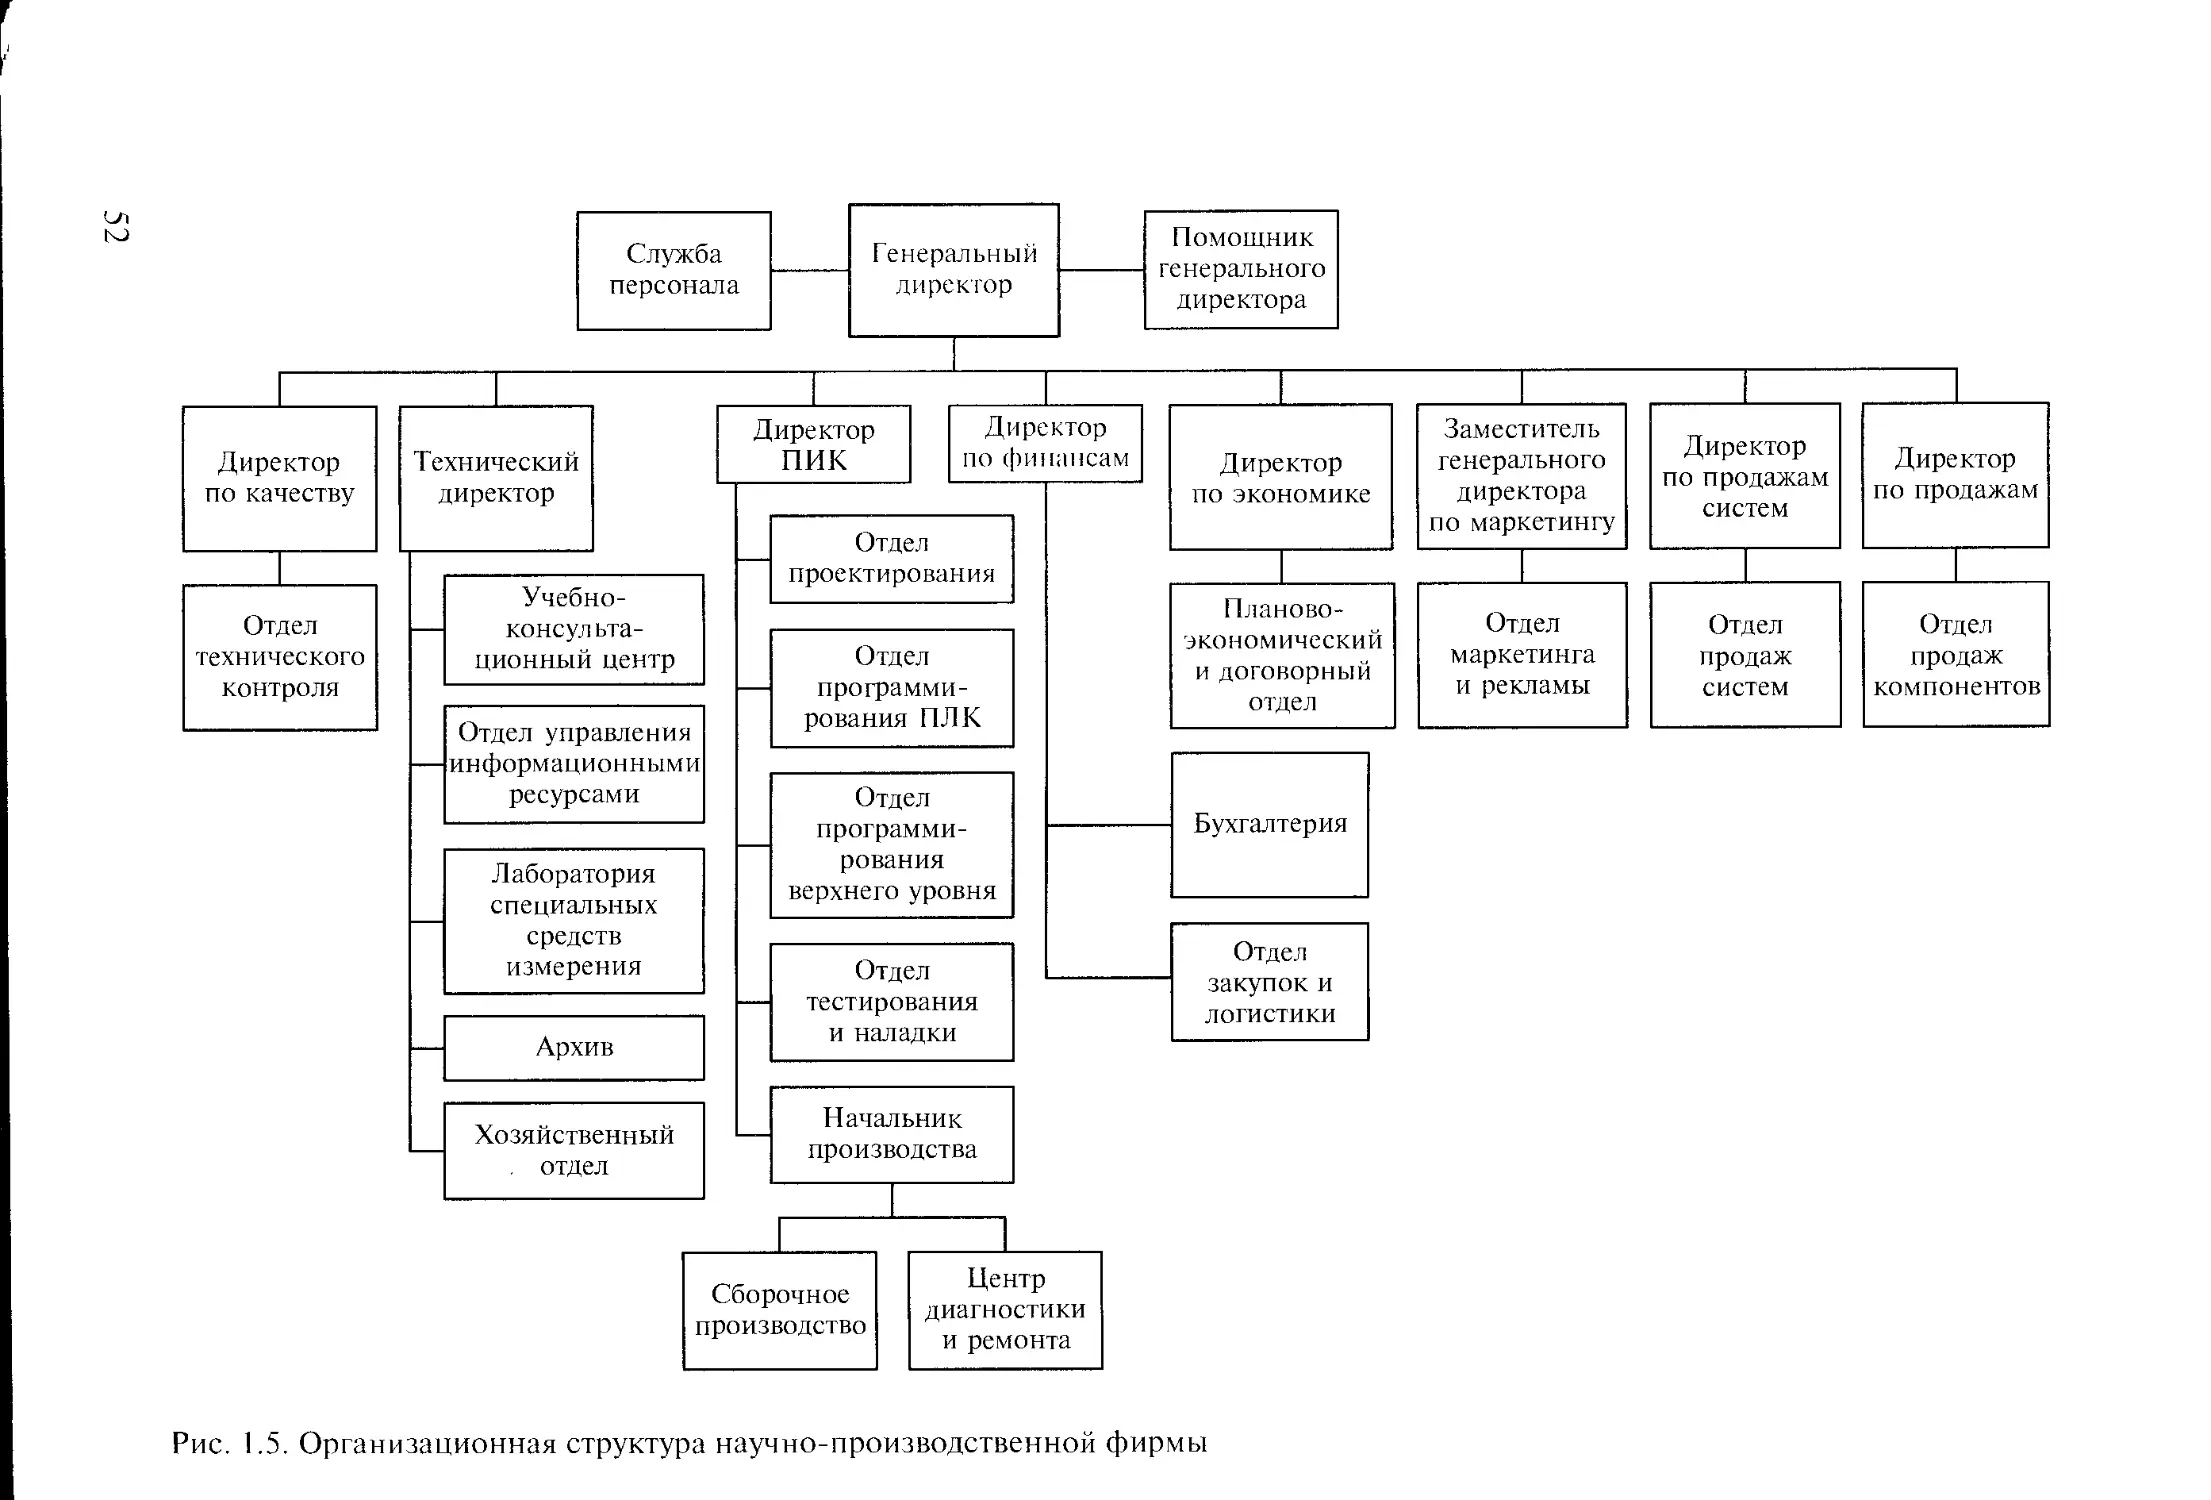 Организационная структура управления металлургическим предприятием